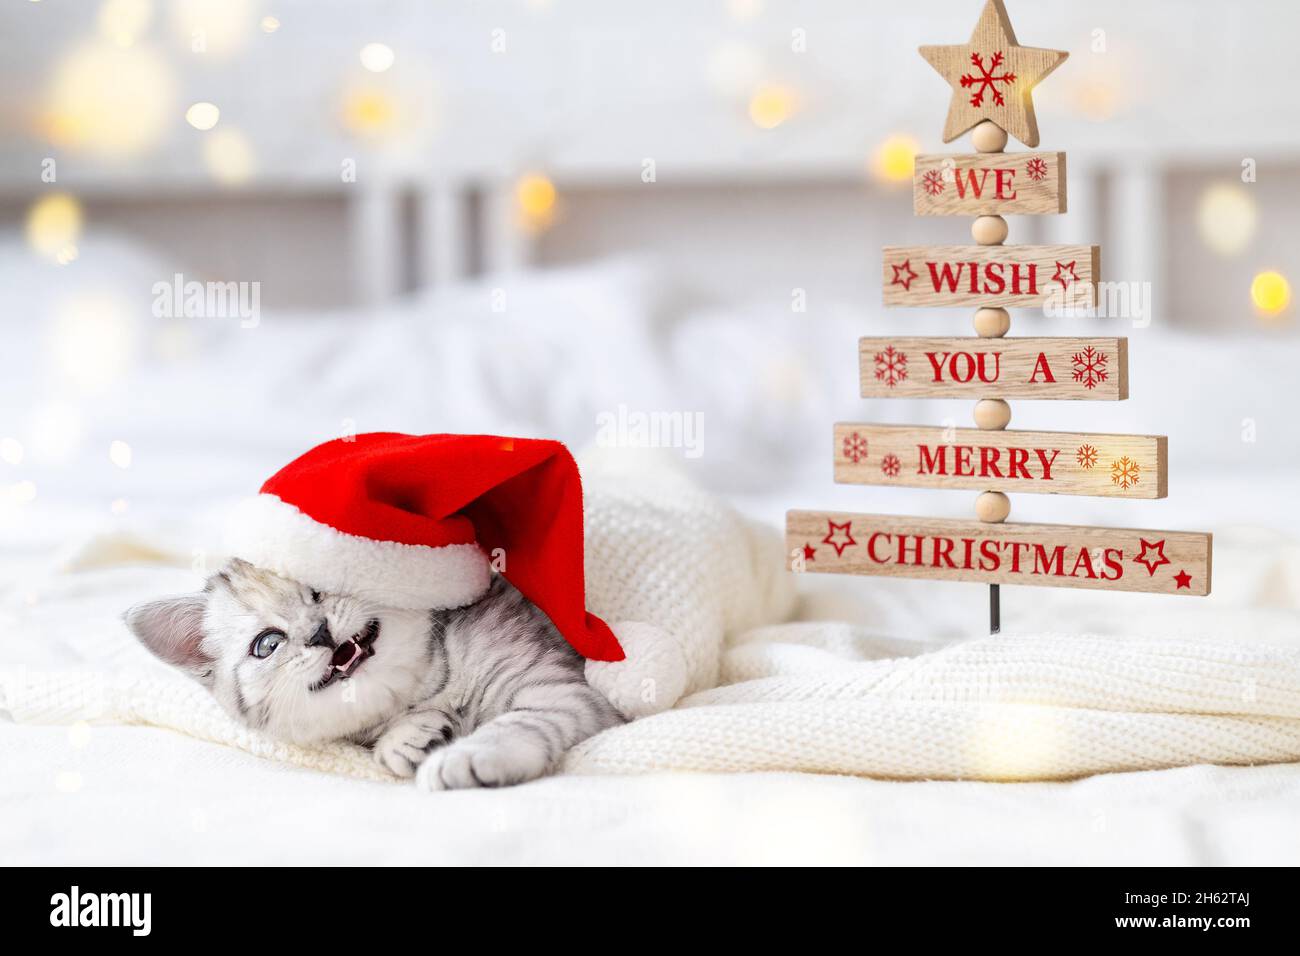 Weihnachten lächelnde Katze Karte Wir wünschen Ihnen ein Frohe Weihnachten.  Wenig neugierig lustig gestreiften schottischen Falte Kätzchen in  Weihnachten roten Weihnachtsmann Hut auf dem Bett zu Hause Stockfotografie  - Alamy